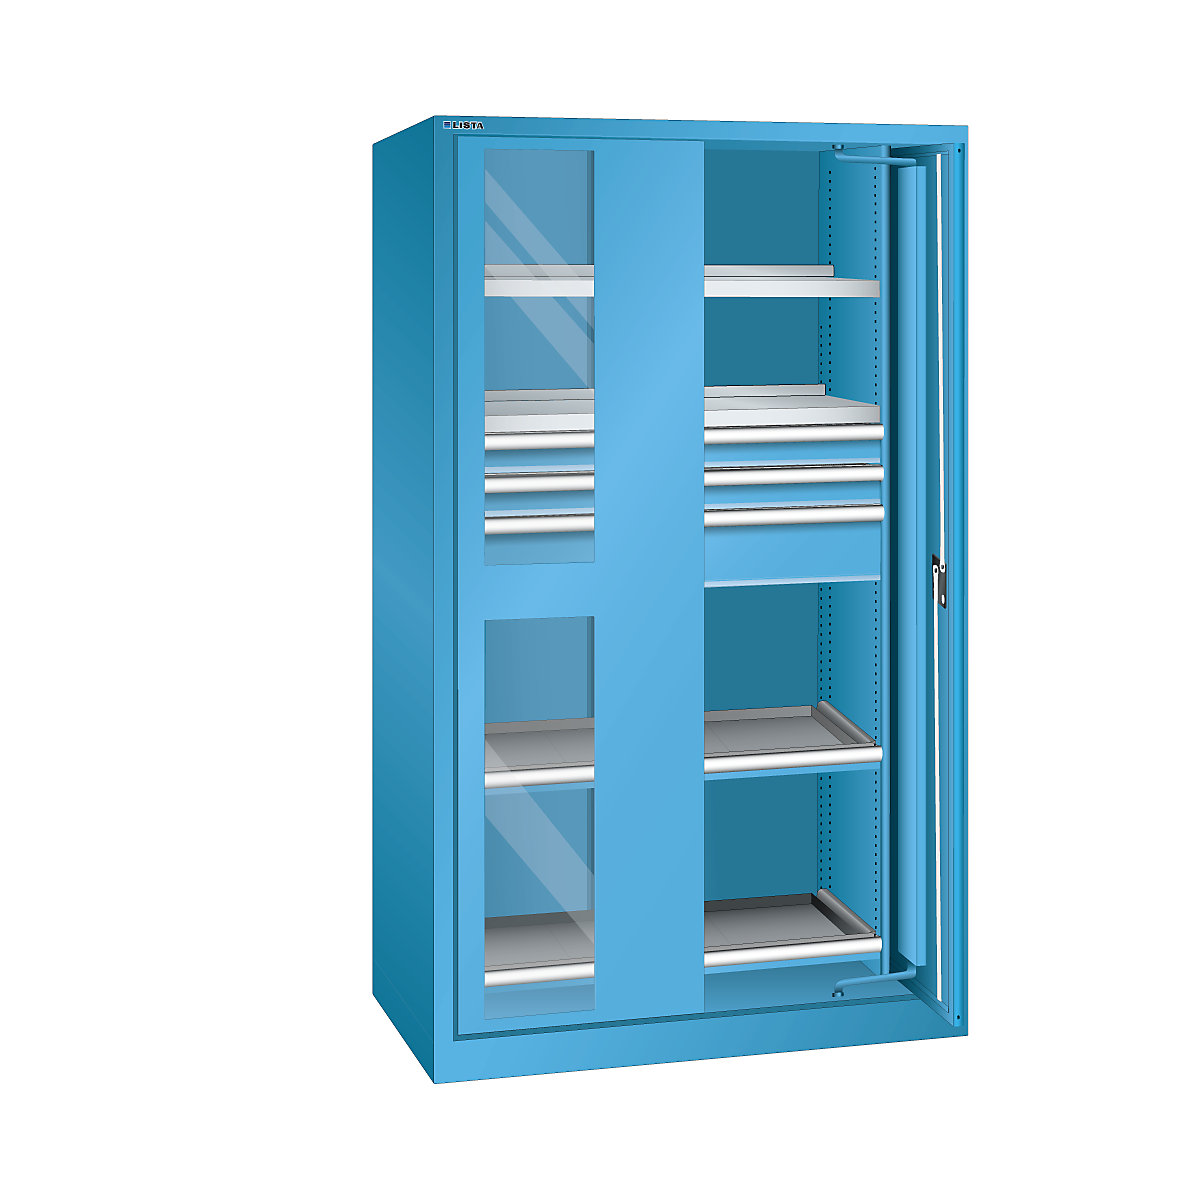 Nagy teherbírású, beforduló ajtós szekrény – LISTA, 3 fiók, 4 polc, ablakos ajtókkal, világoskék-8